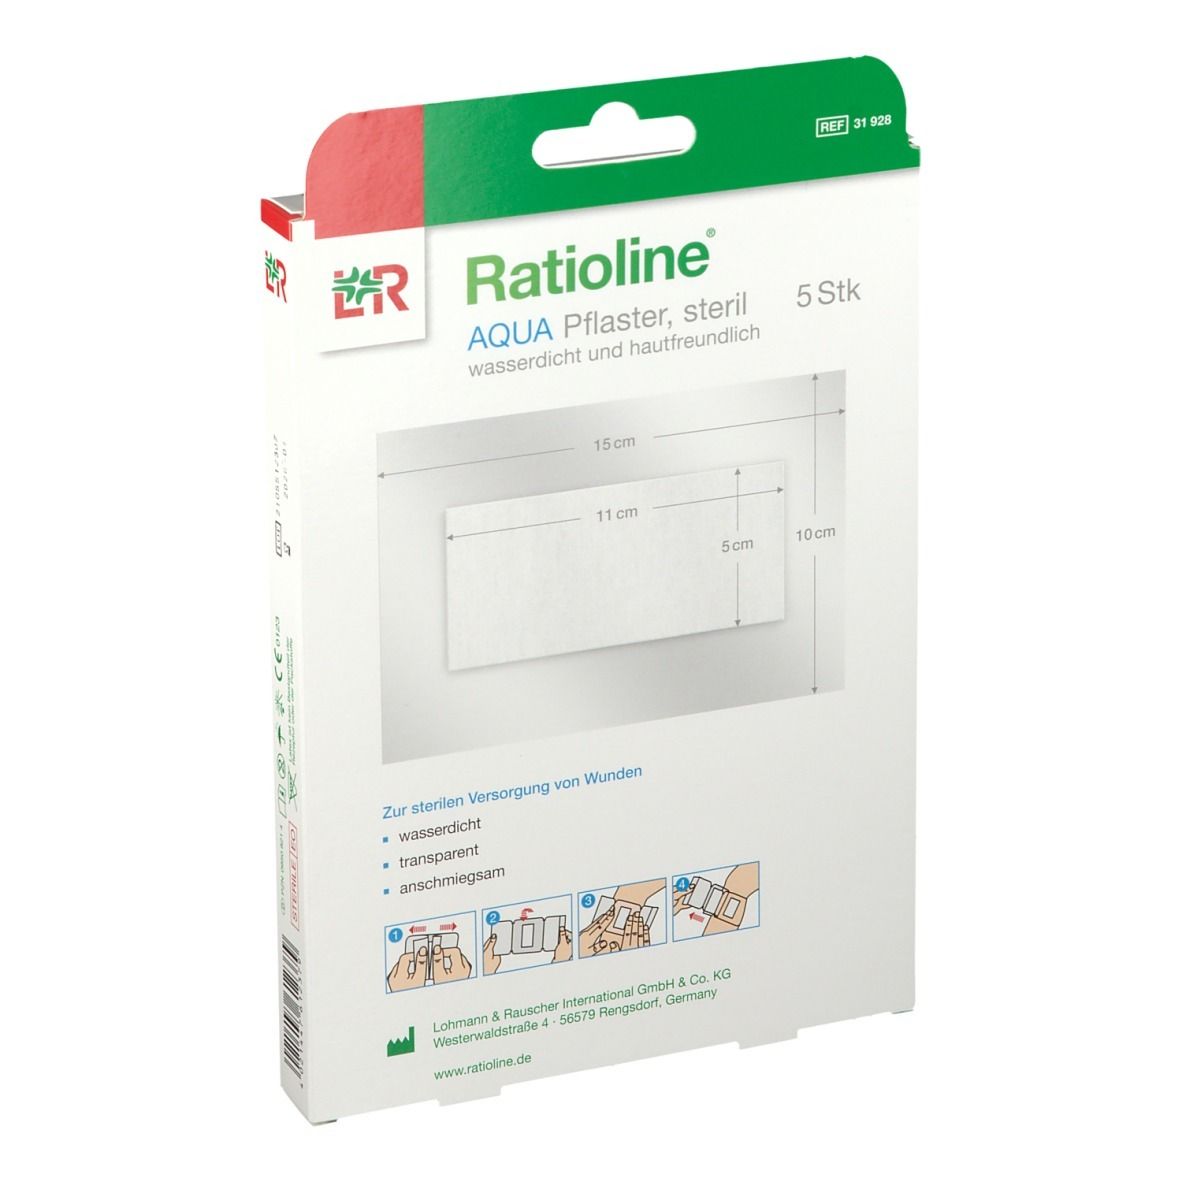 Ratioline® aqua Duschpflaster Plus 10 x 15 cm